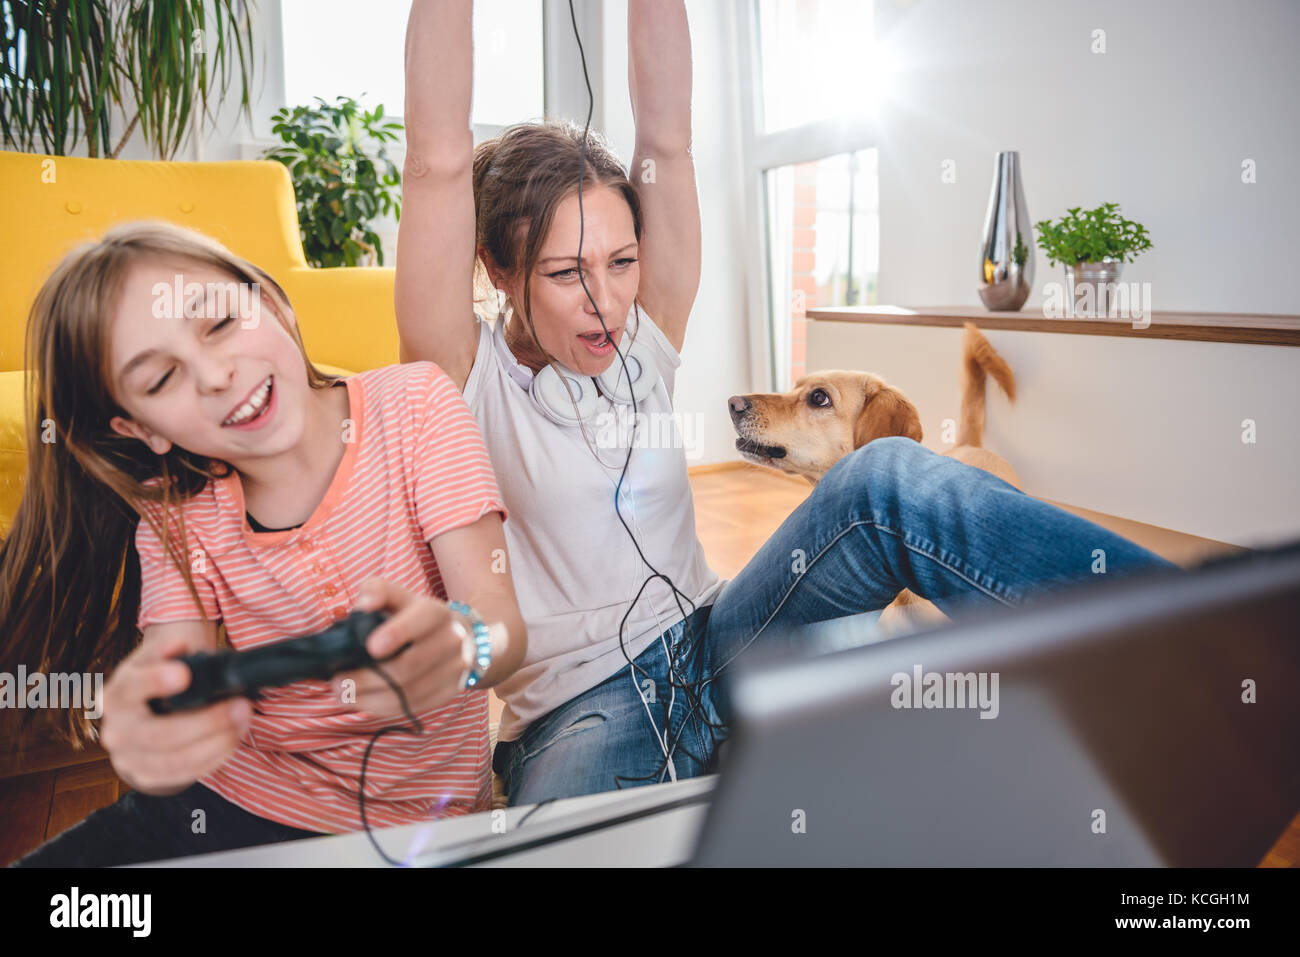 Mère et fille jouer à des jeux vidéo sur ordinateur portable à la maison Banque D'Images